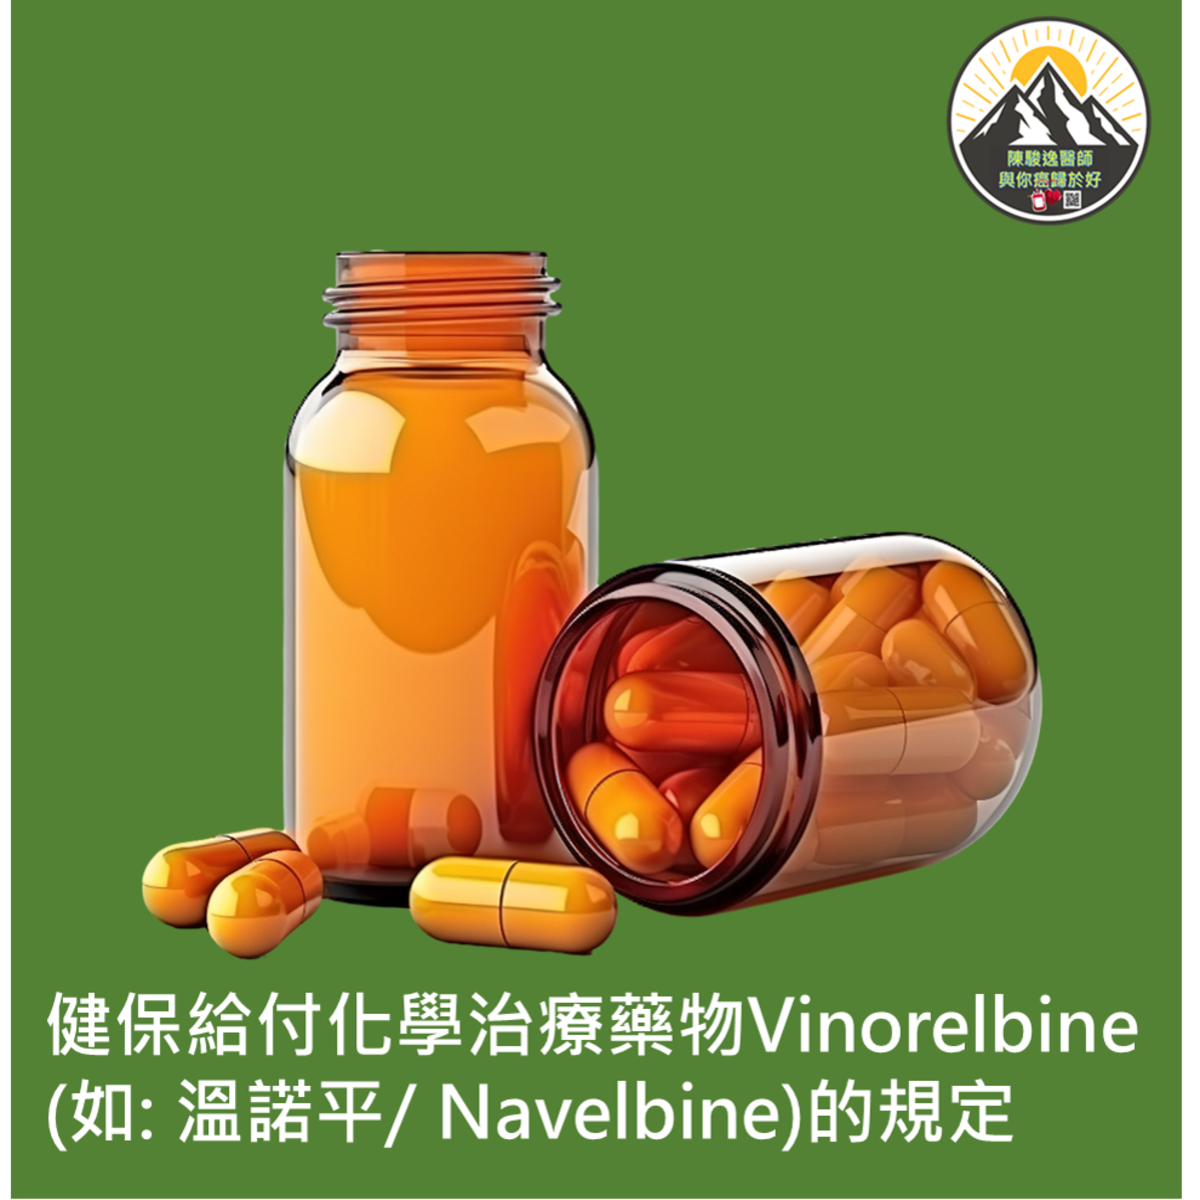 健保給付化學治療藥物Vinorelbine (如: 溫諾平/ Navelbine)的規定